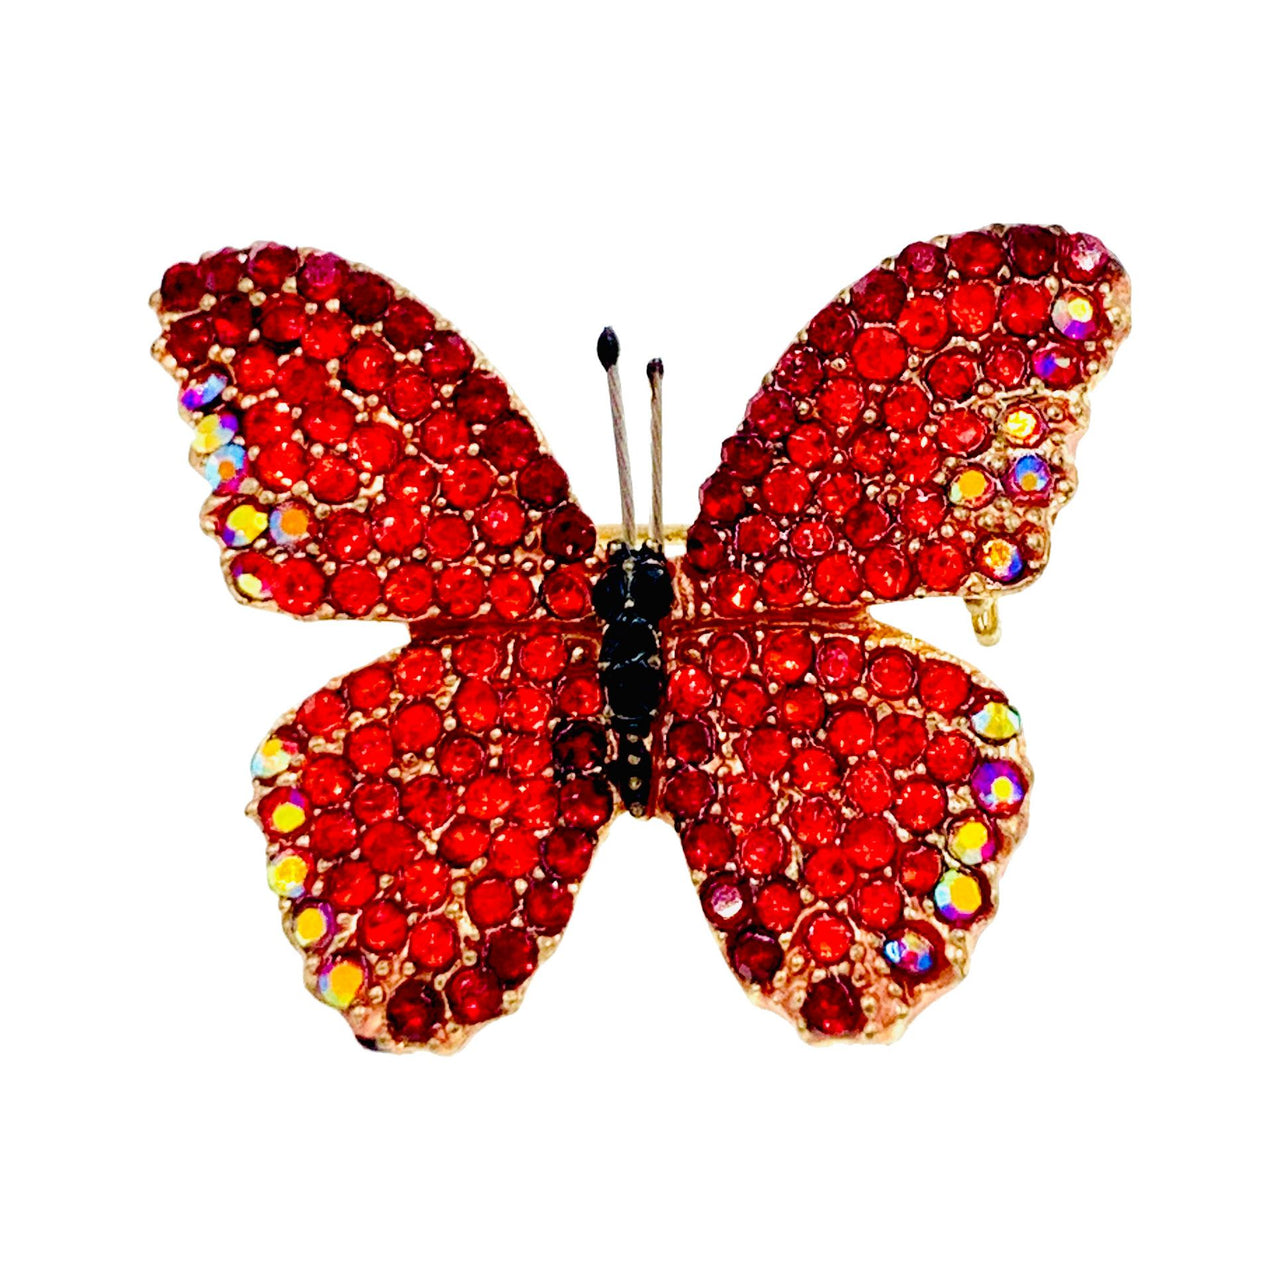 Lucinda Handmade Small Butterfly Brooch Pin use Swarovski Elementary Crystal, Brooch - MOGHANT